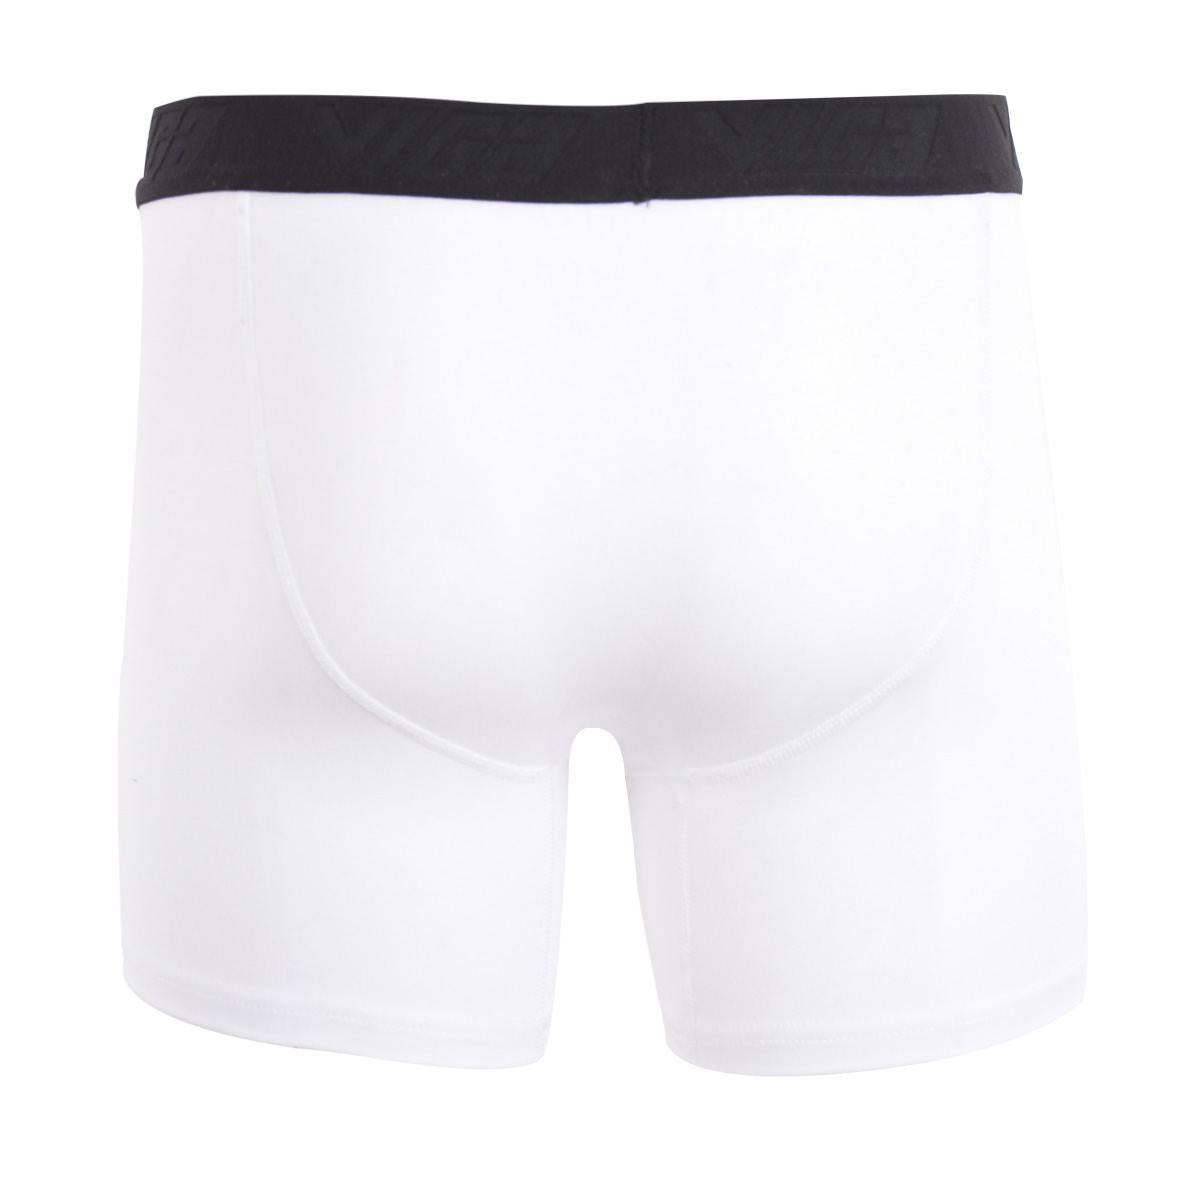 Viga boxer shorts - White